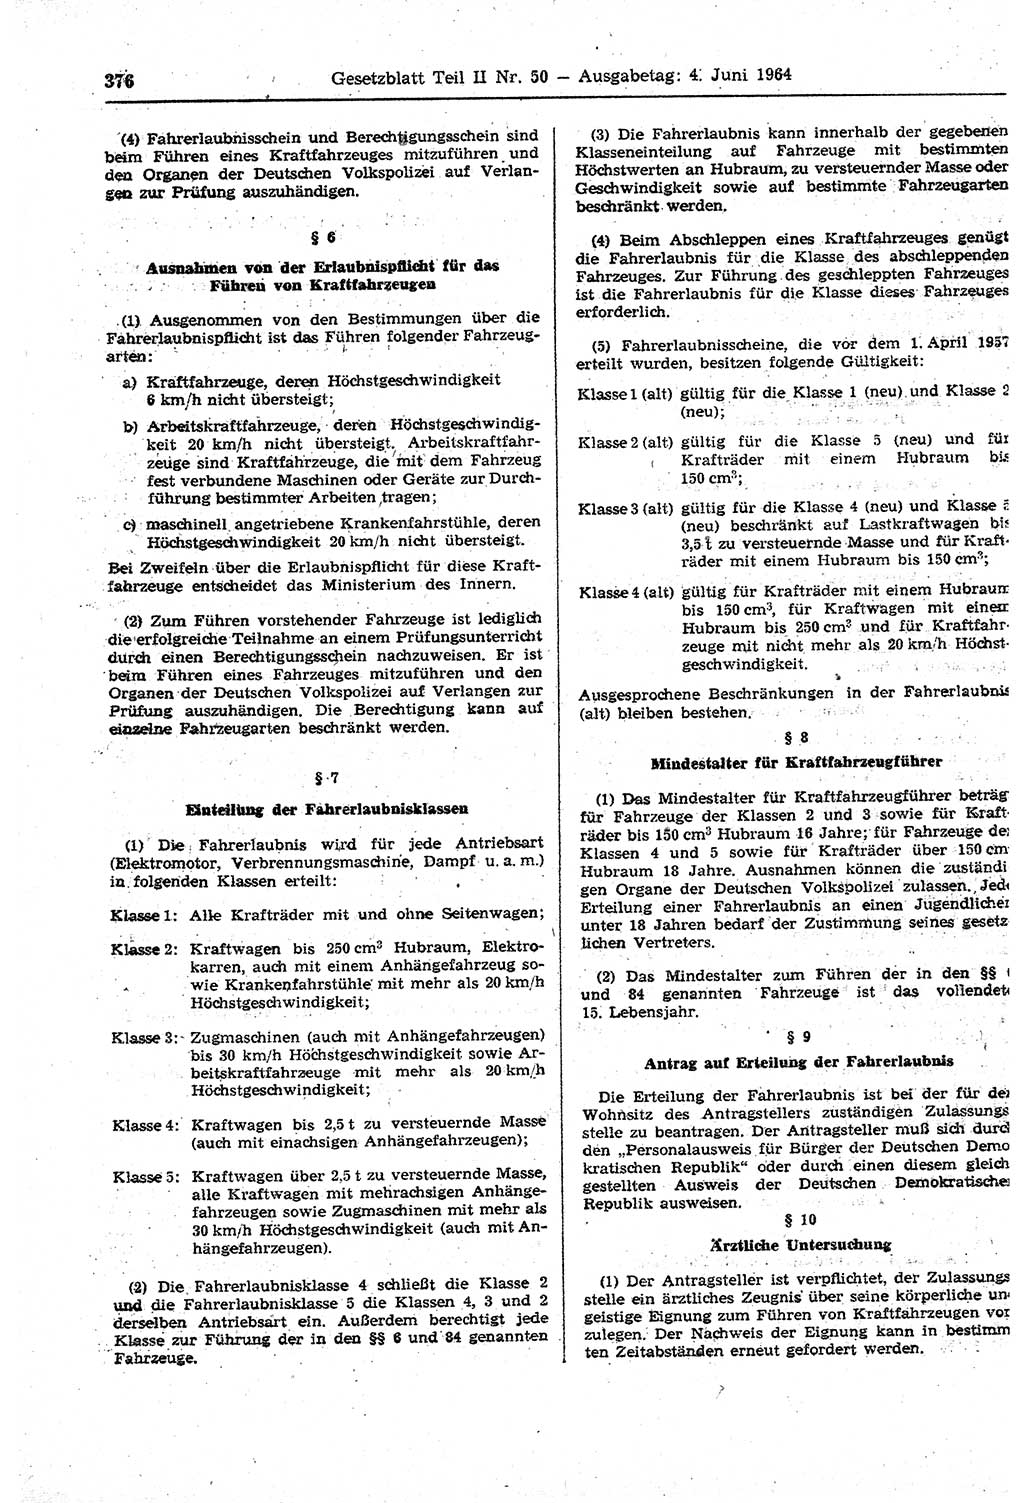 Gesetzblatt (GBl.) der Deutschen Demokratischen Republik (DDR) Teil ⅠⅠ 1964, Seite 376 (GBl. DDR ⅠⅠ 1964, S. 376)